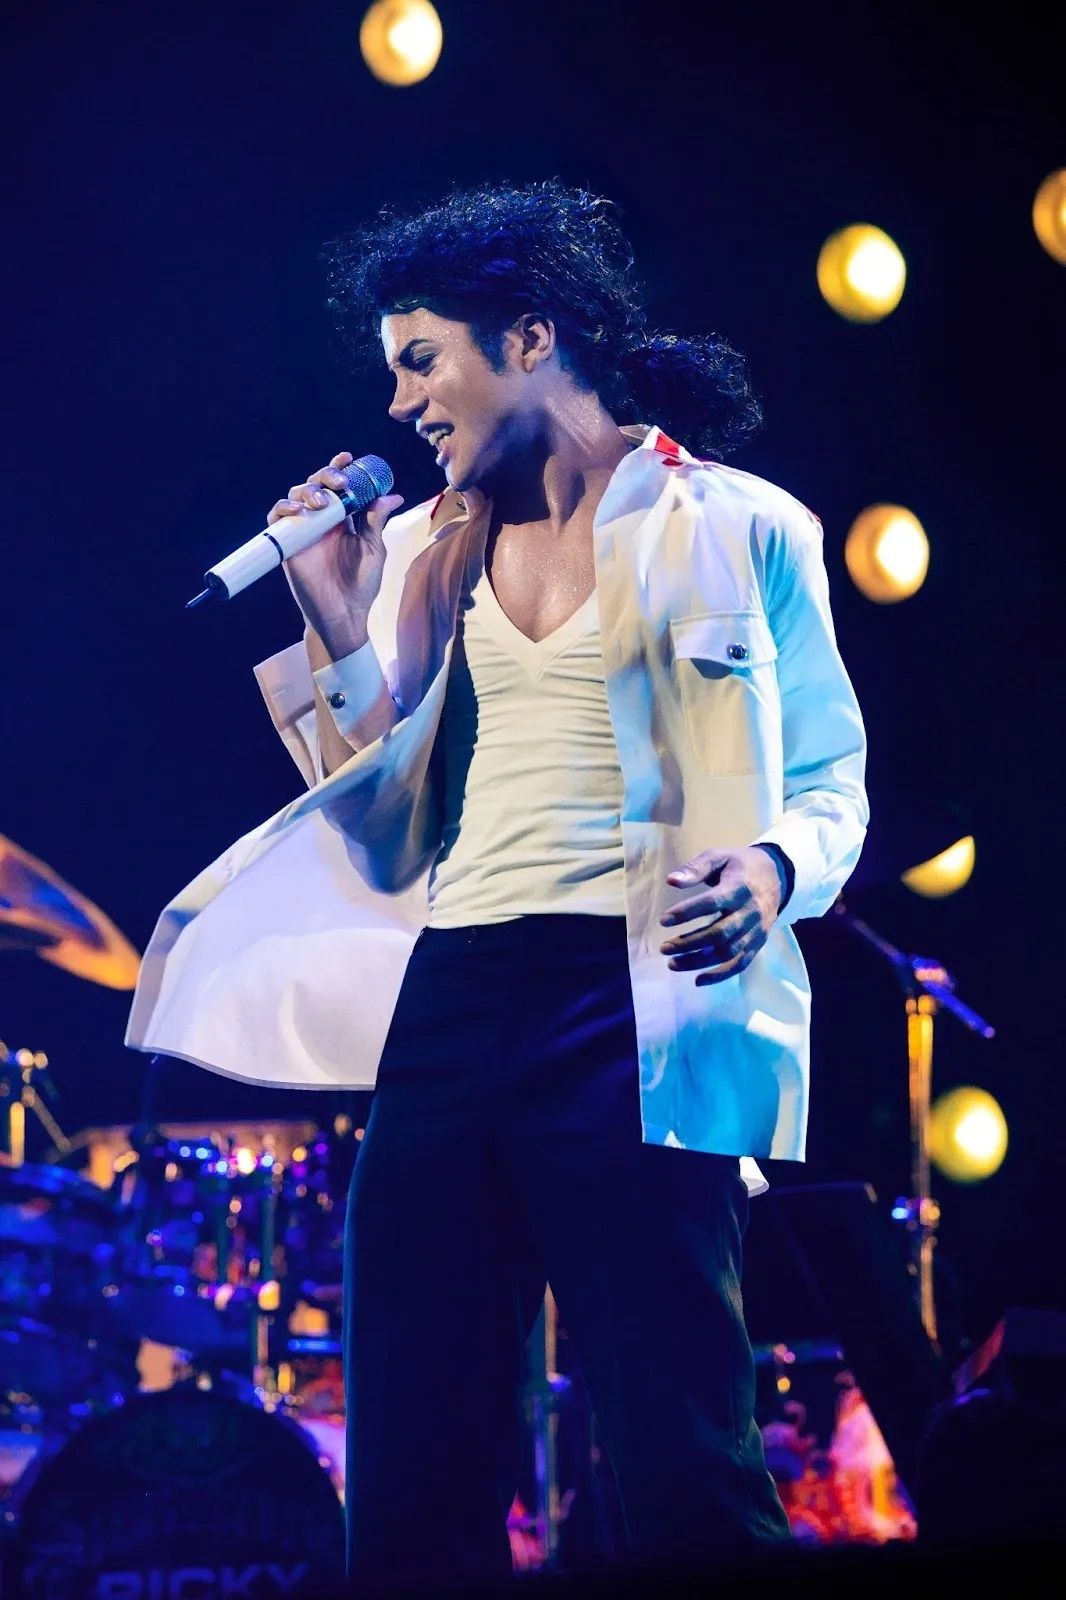 Imagen biográfica del primer vistazo de Michael Jackson